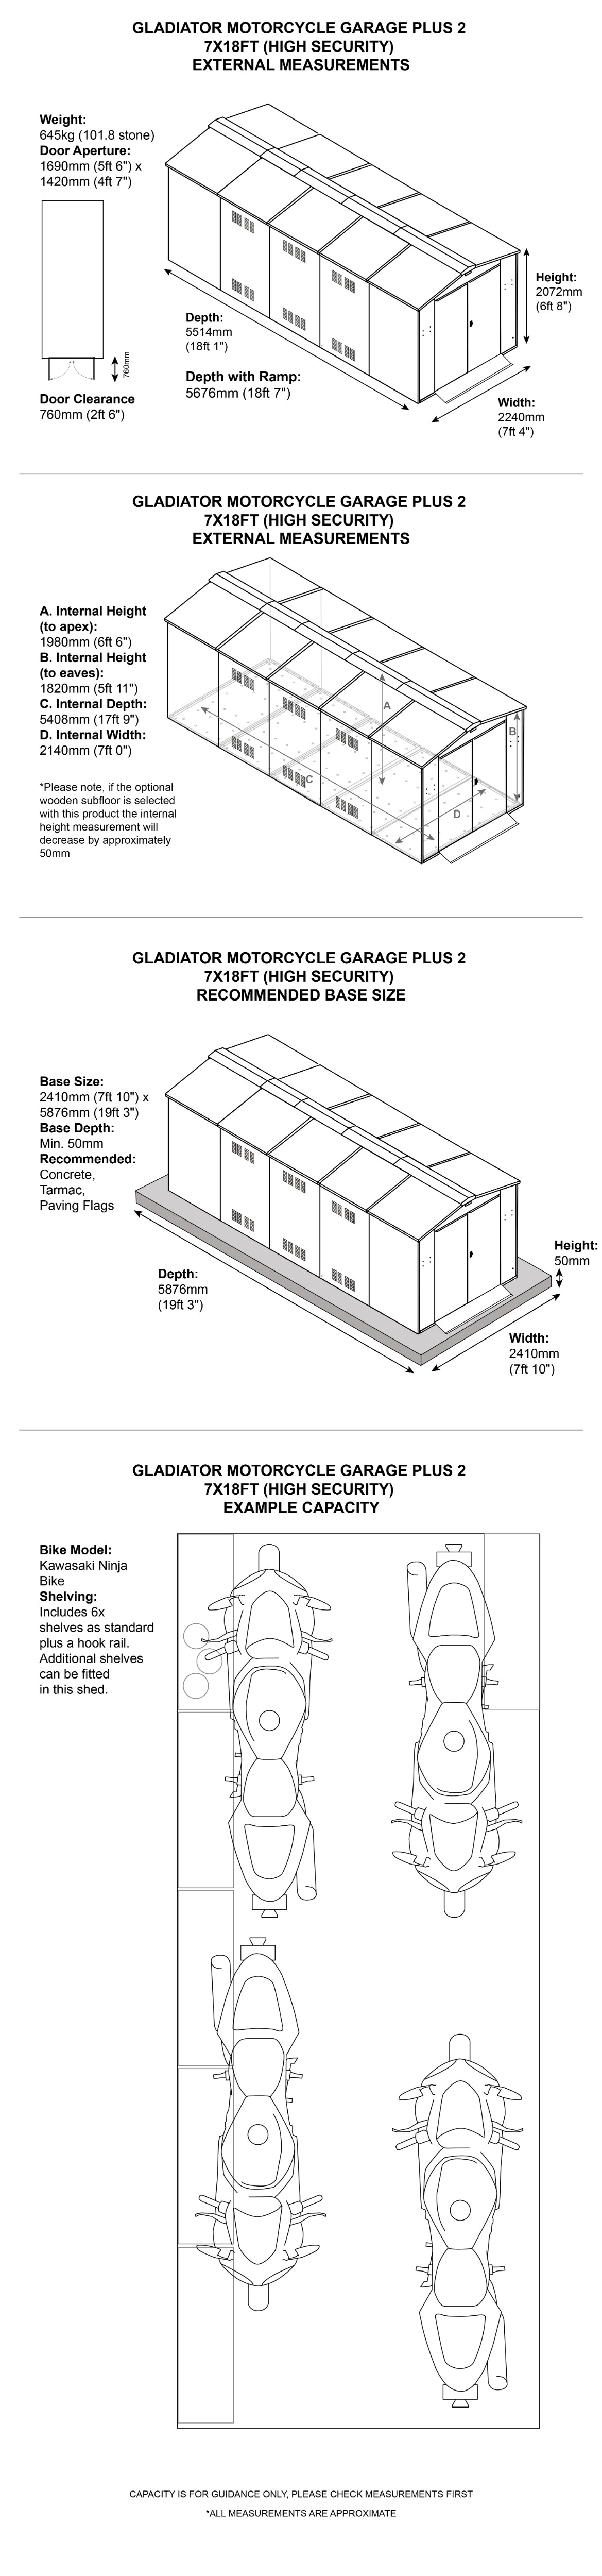 Gladiator Motorbike Storage 18x7 Dimensions